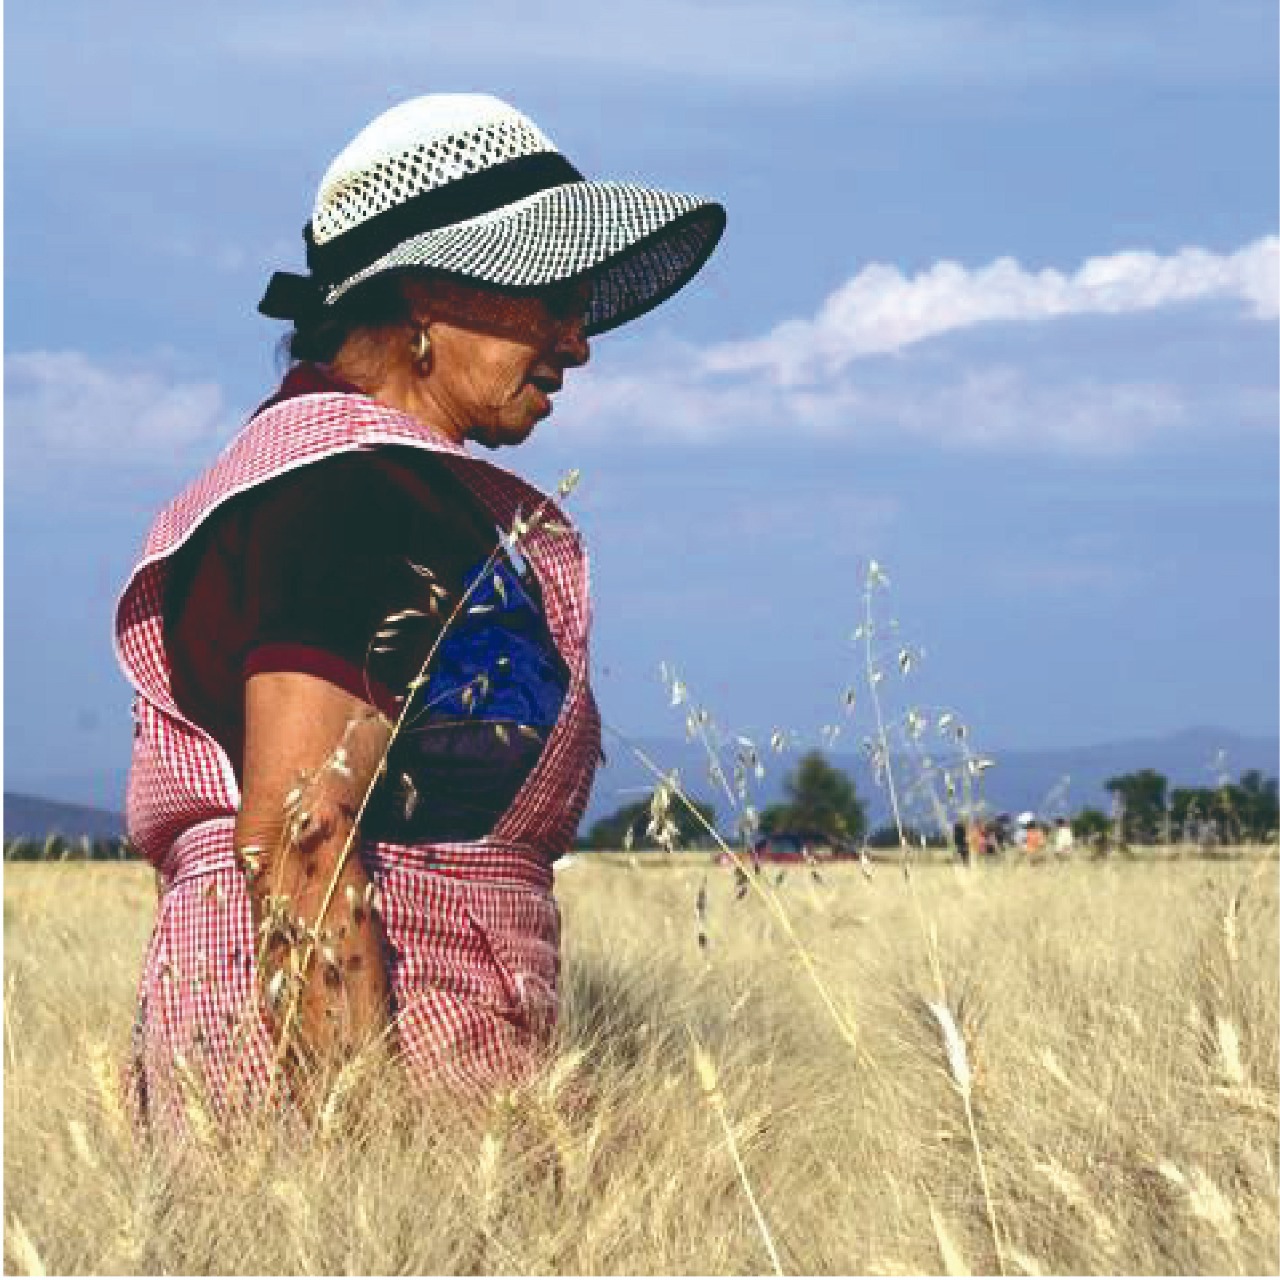 En este 8 de marzo, Día internacional de la mujer, resaltamos el trabajo de las mujeres en el sector agrícola de nuestro país.